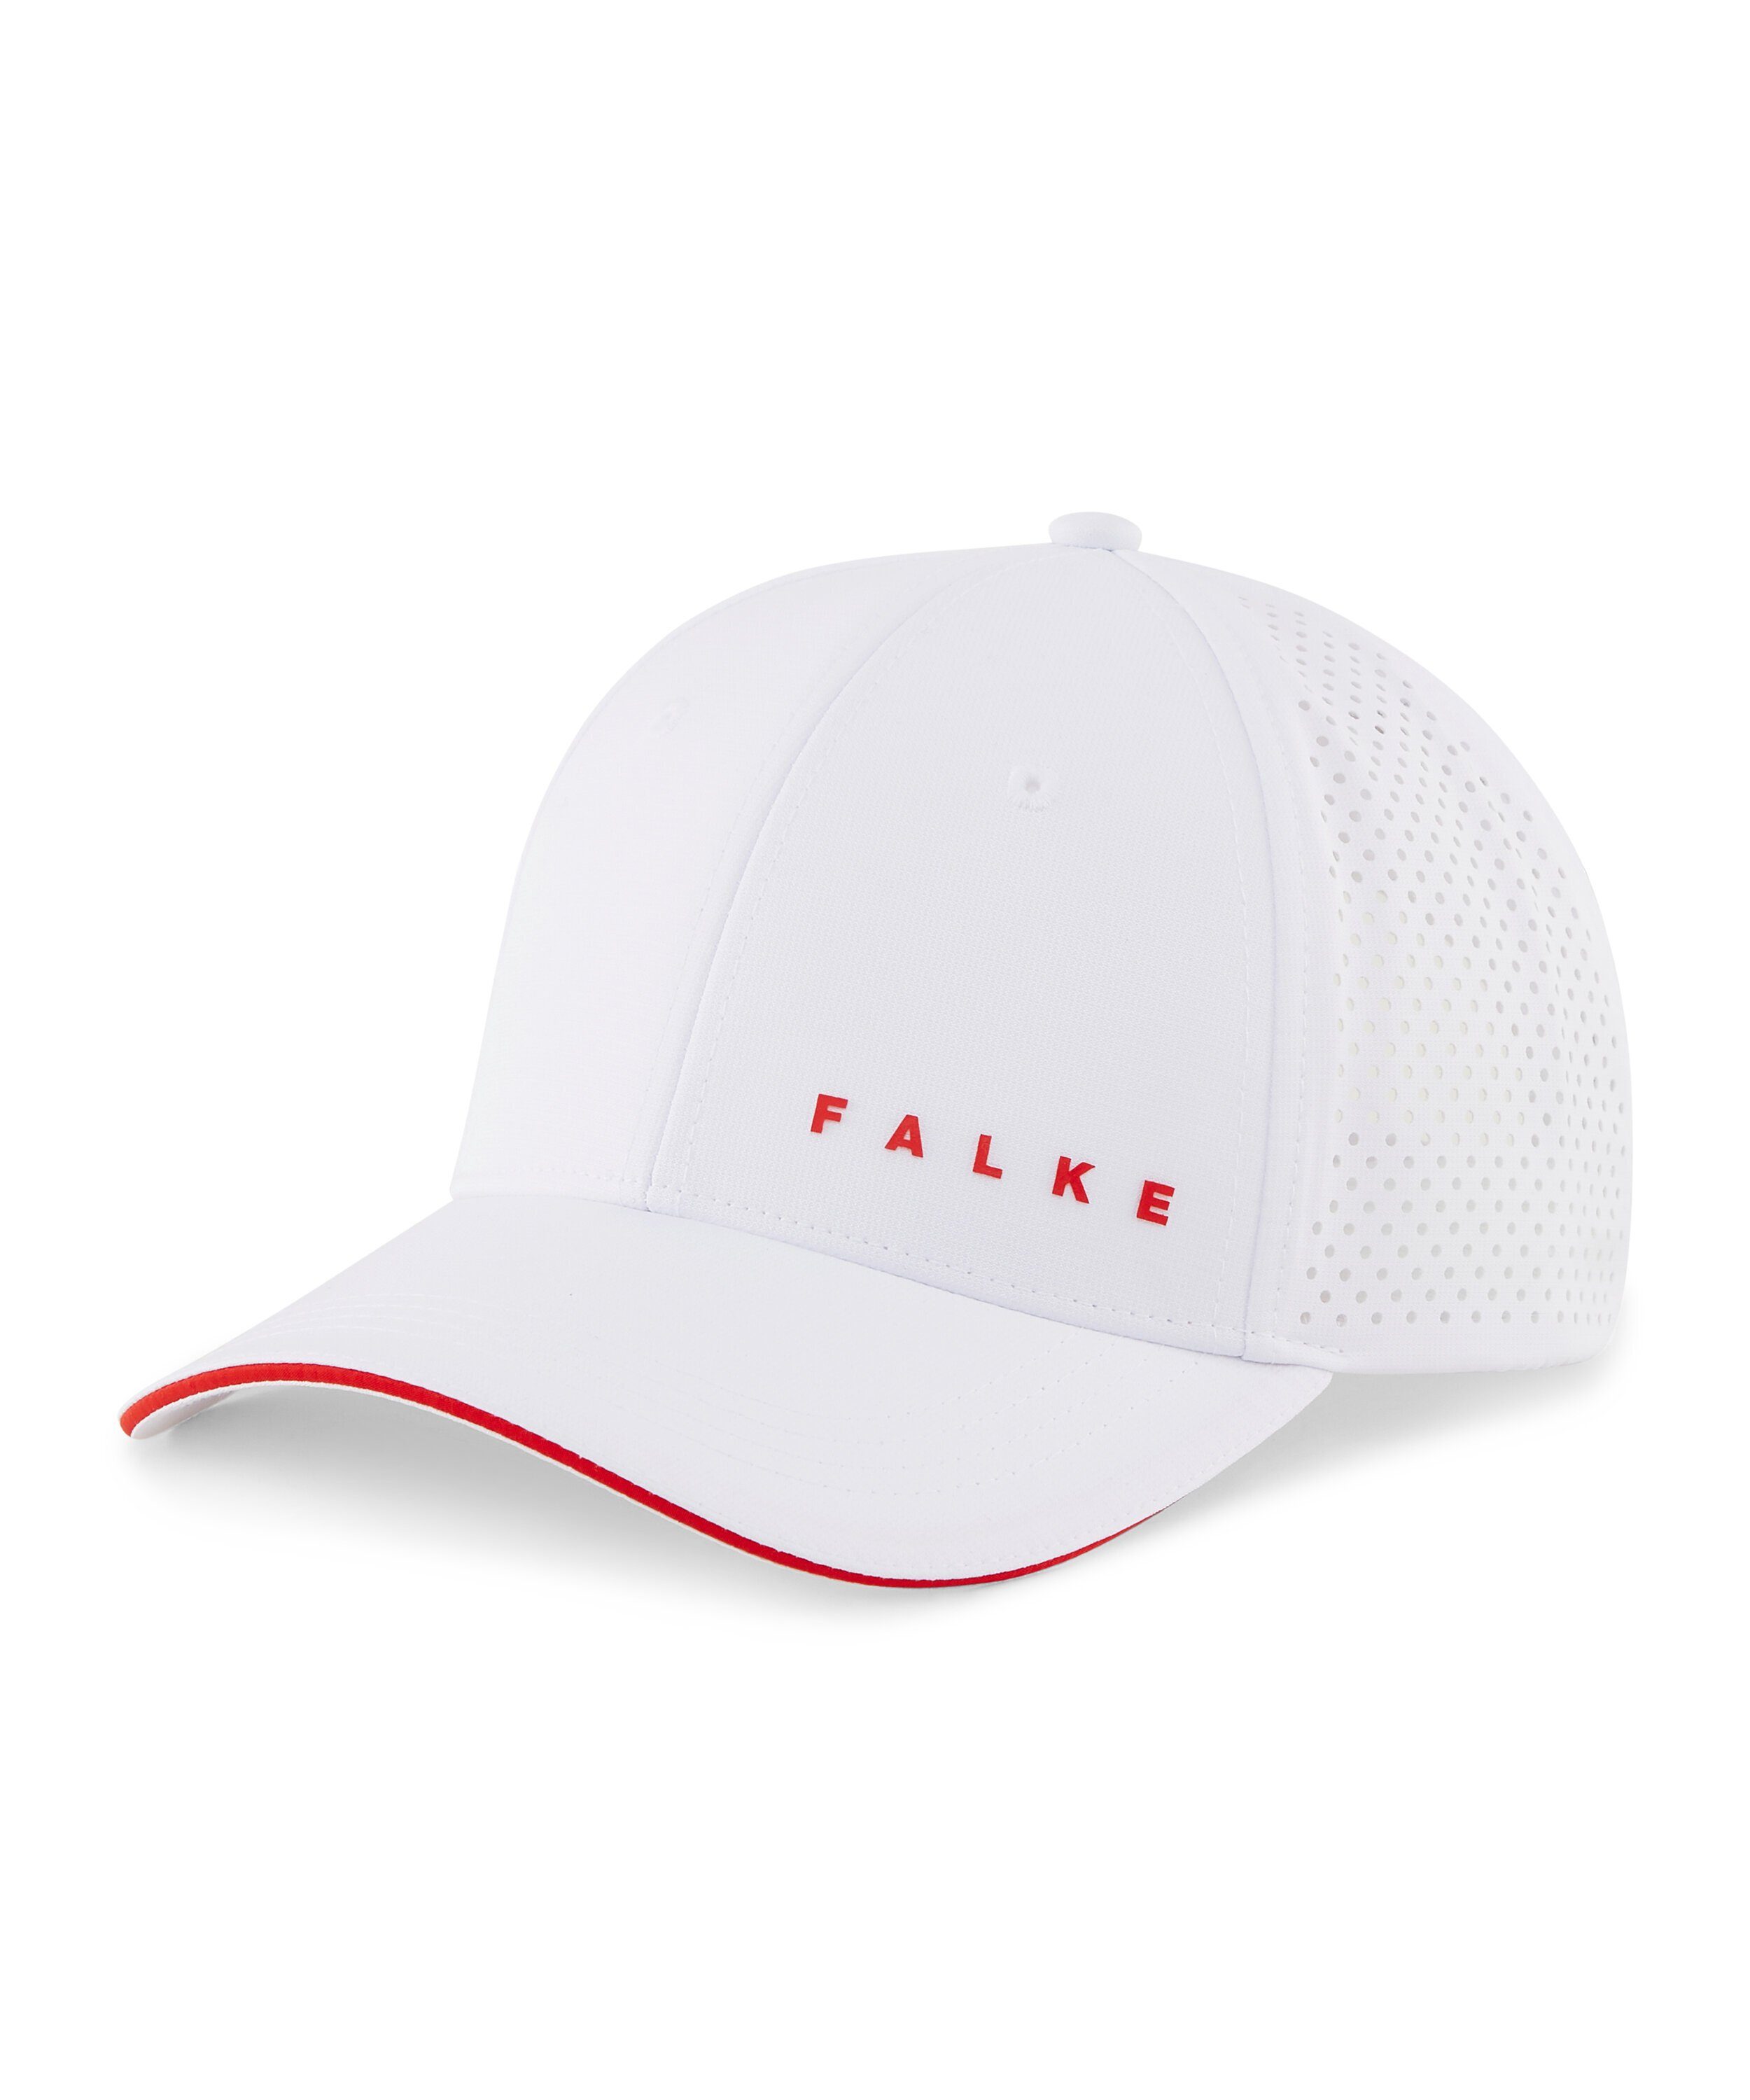 FALKE Baseball Cap white (2860)